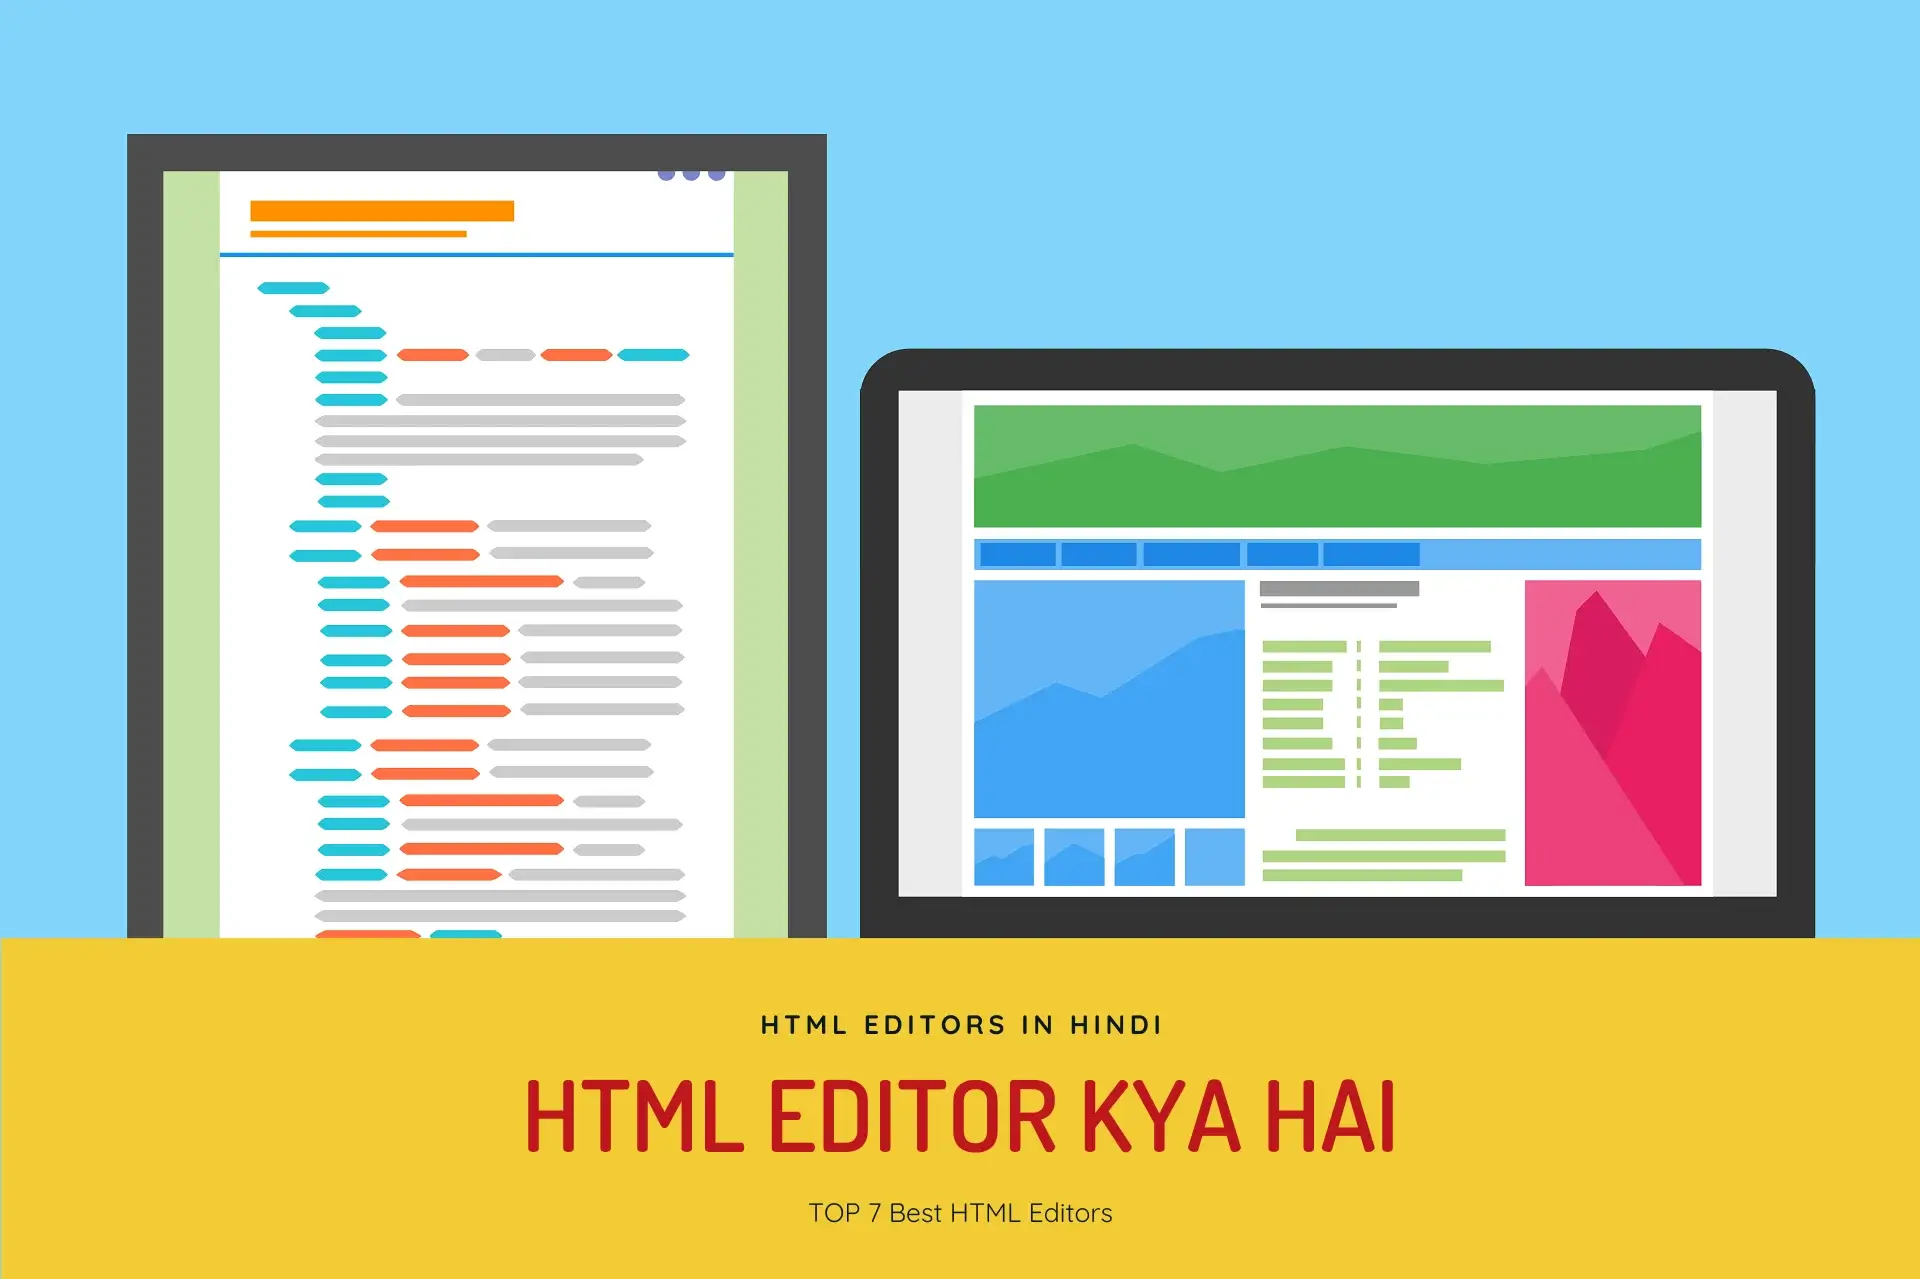 HTML Editor kya hai